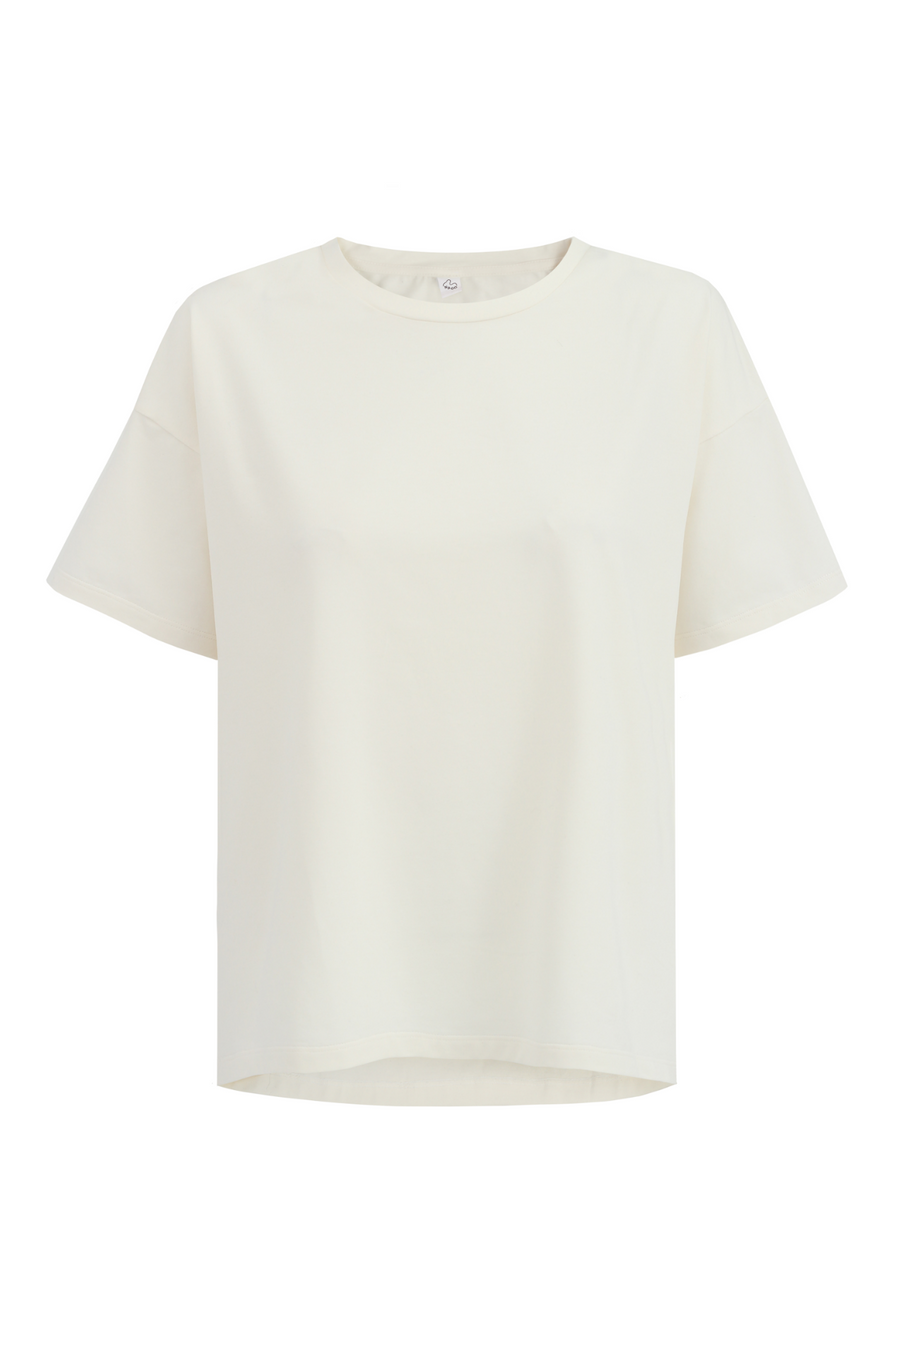 T-shirt z bawełny organicznej / 13 / 02 / cream white